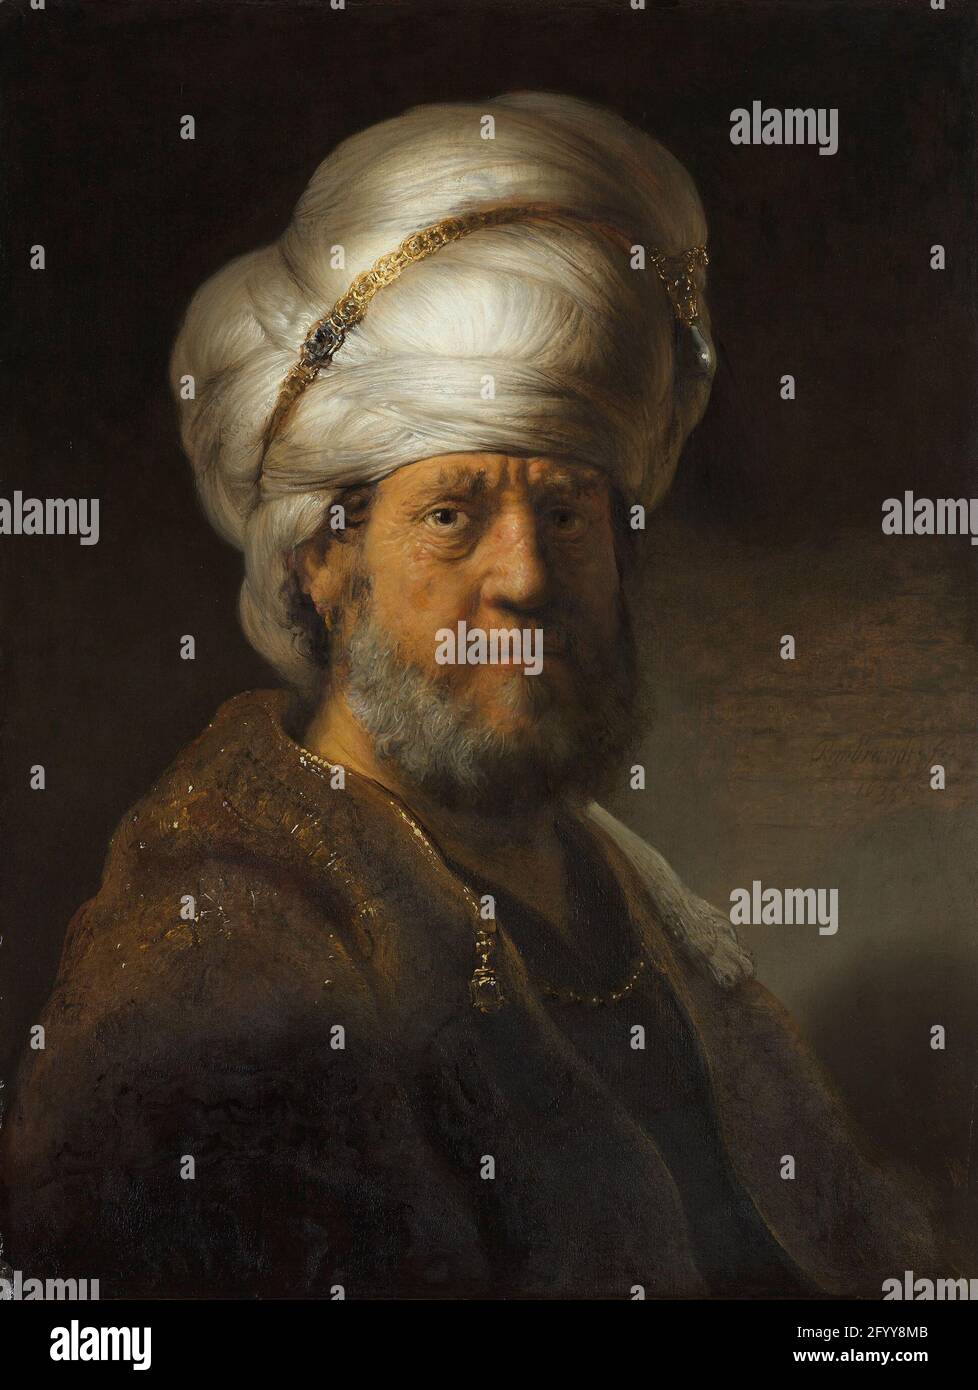 Homme en robe orientale. Rembrandt a manipulé la lumière de manière très personnelle. Ici, le turban de l’homme et le côté droit de son visage sont brillamment éclairés, tandis que le côté gauche est dans l’ombre. Les têtes de personnages exotiques comme celle-ci – ce ne sont pas des portraits – étaient extrêmement populaires au XVIIe siècle ; au début, elles étaient largement copiées et imitées. Theyétaient connus sous le nom de «tronies turques». Banque D'Images